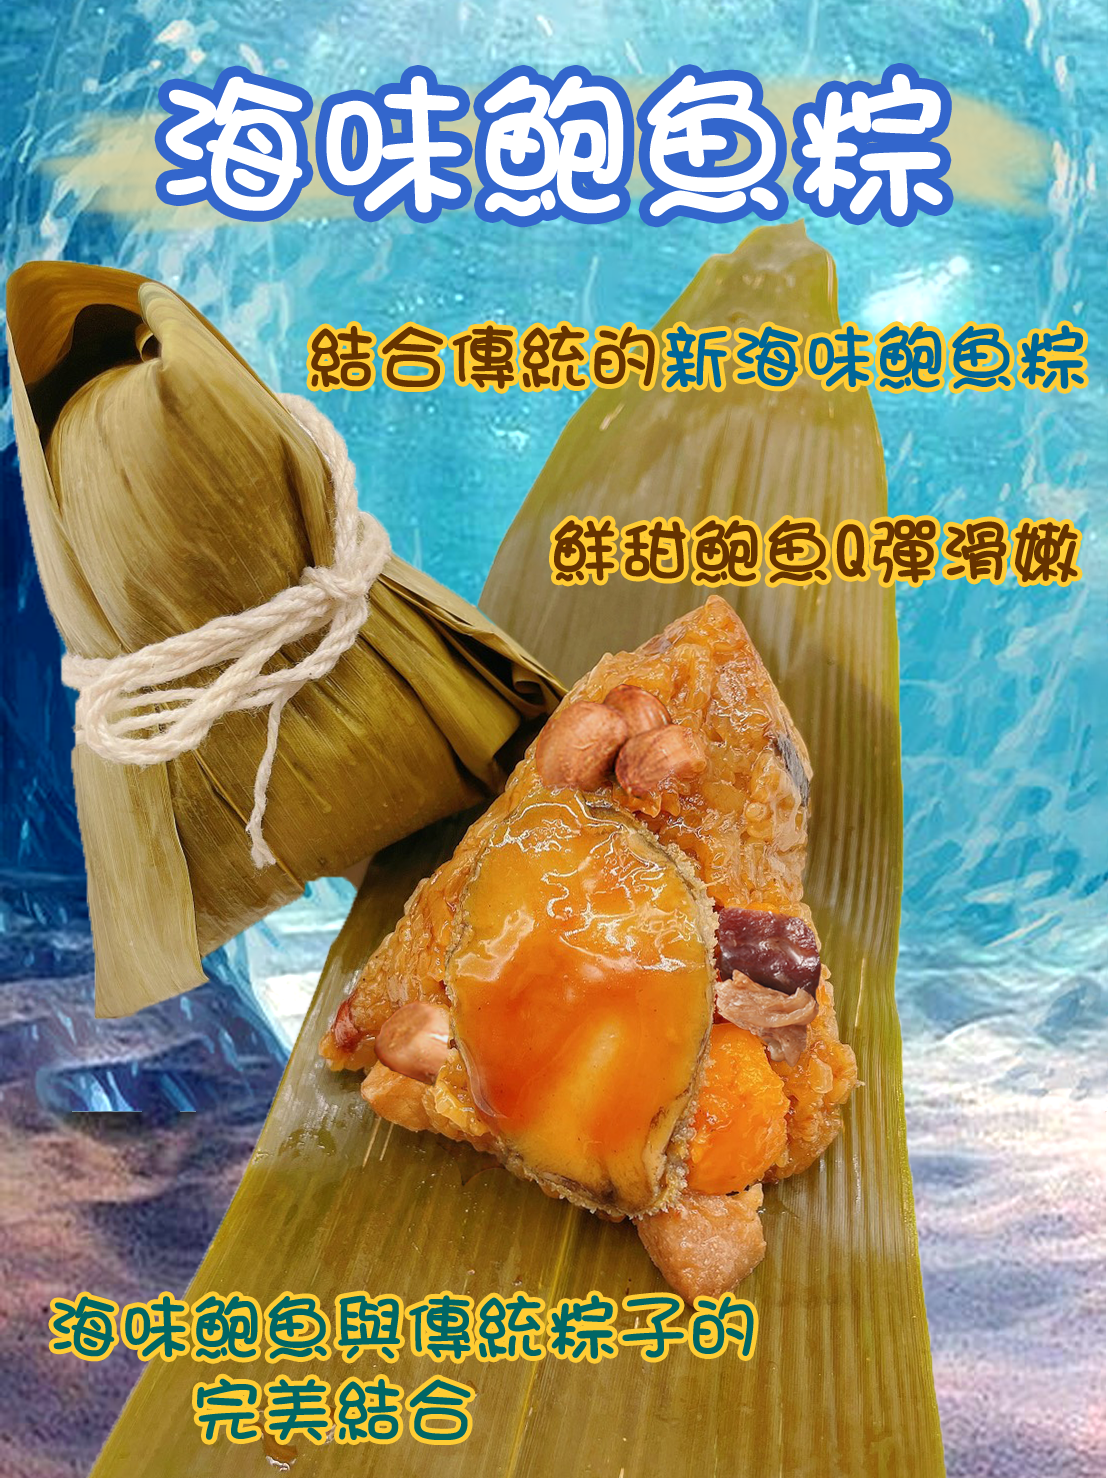 【517】古早味海味粽送禮組合(附精美保冰袋) 蛋黃粽/鮑魚粽/干貝粽/蒲燒鰻粽